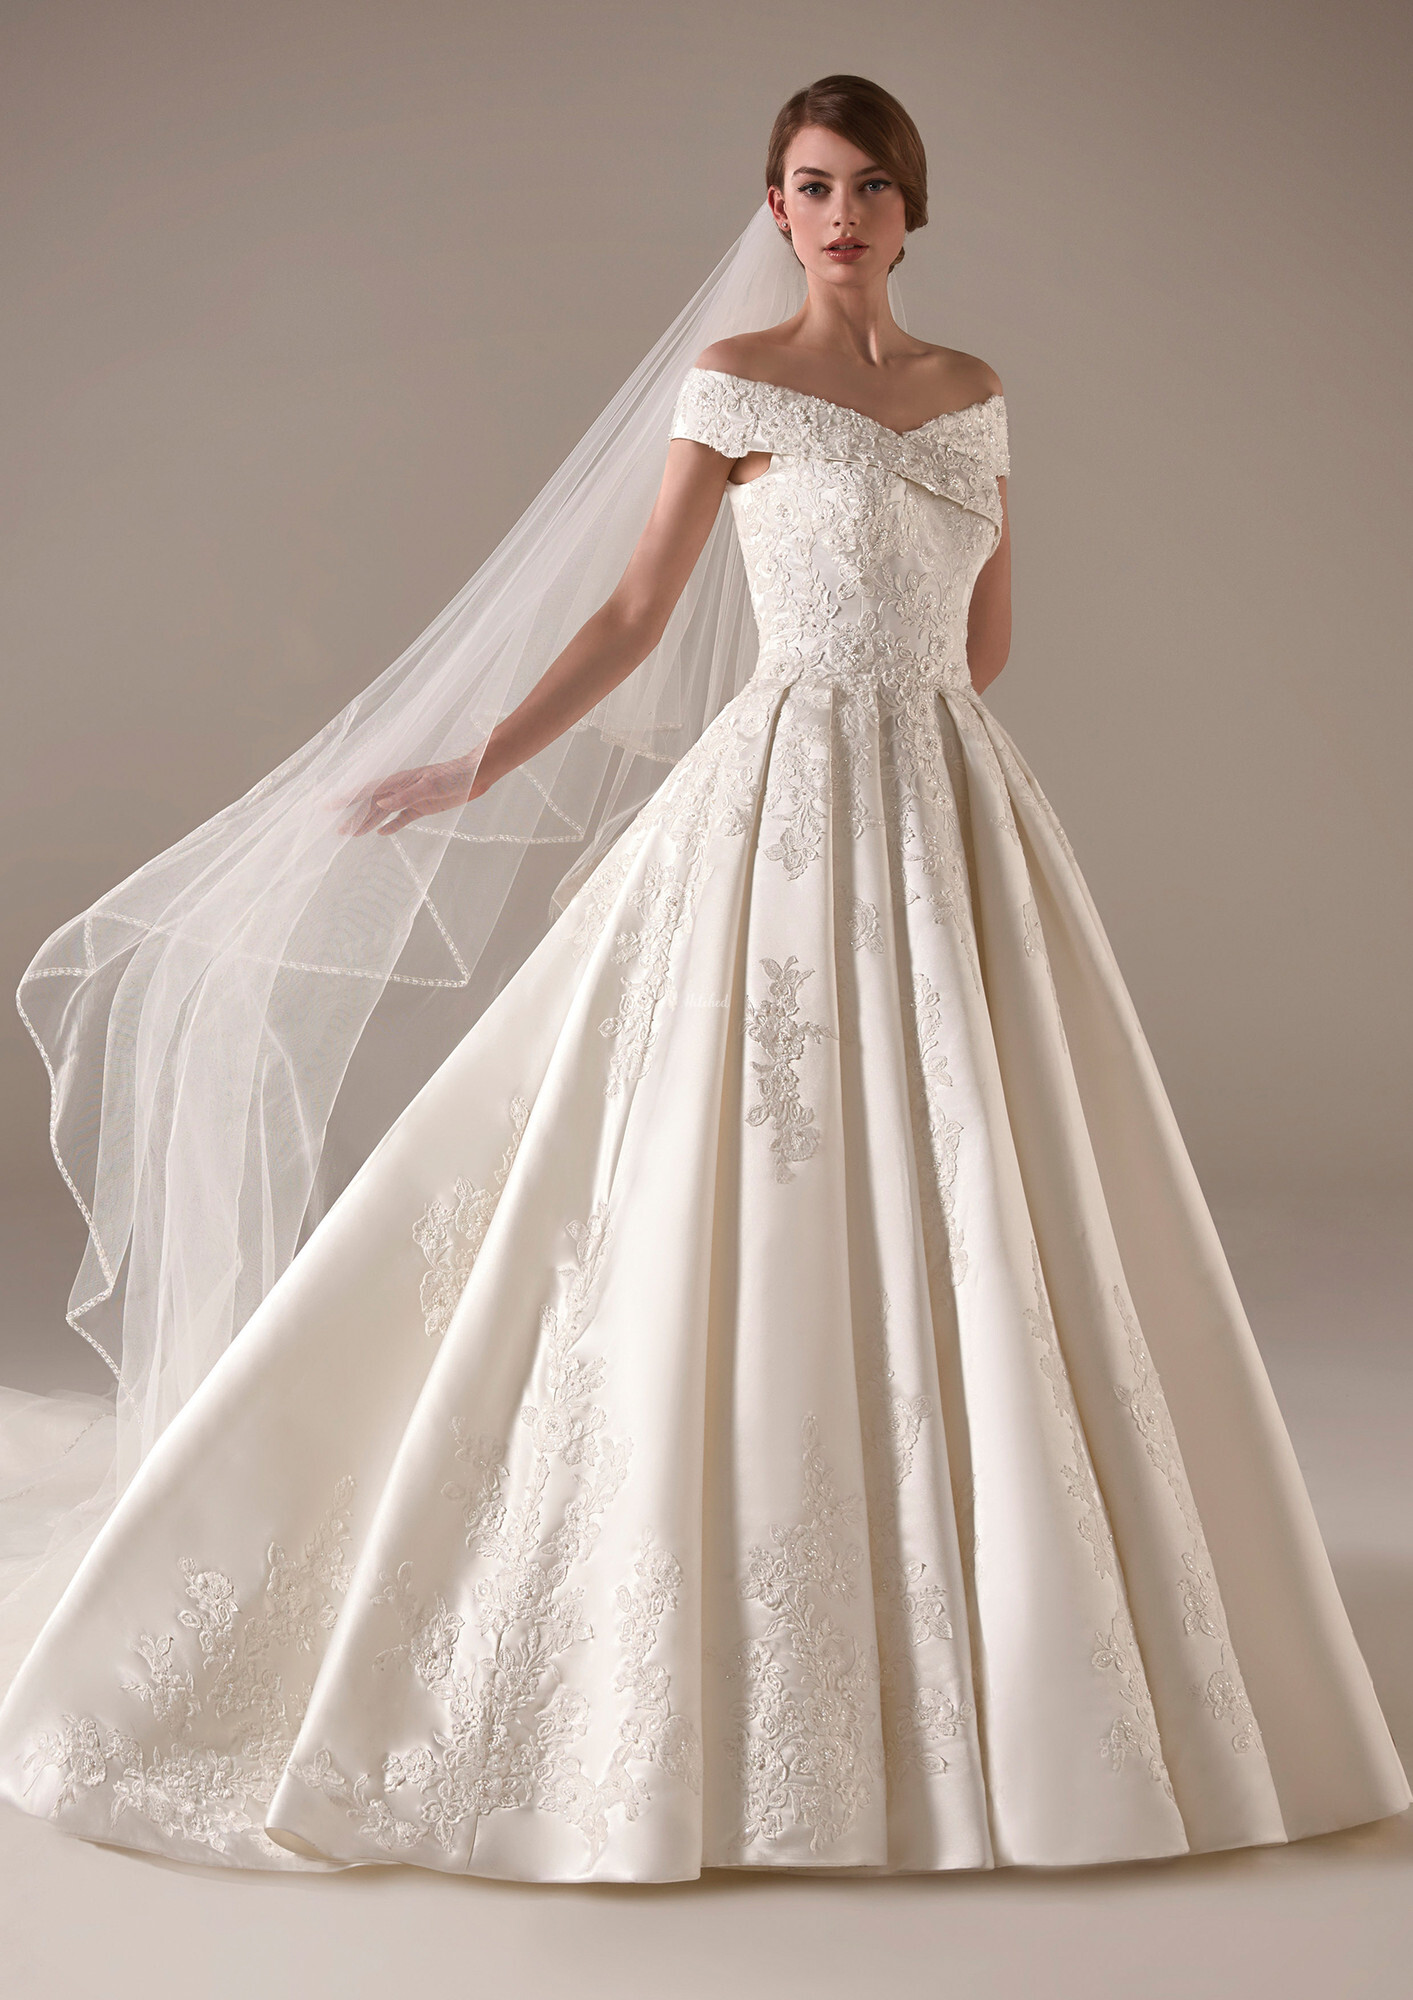 EMMA Wedding Dress from Pronovias - hitched.co.uk